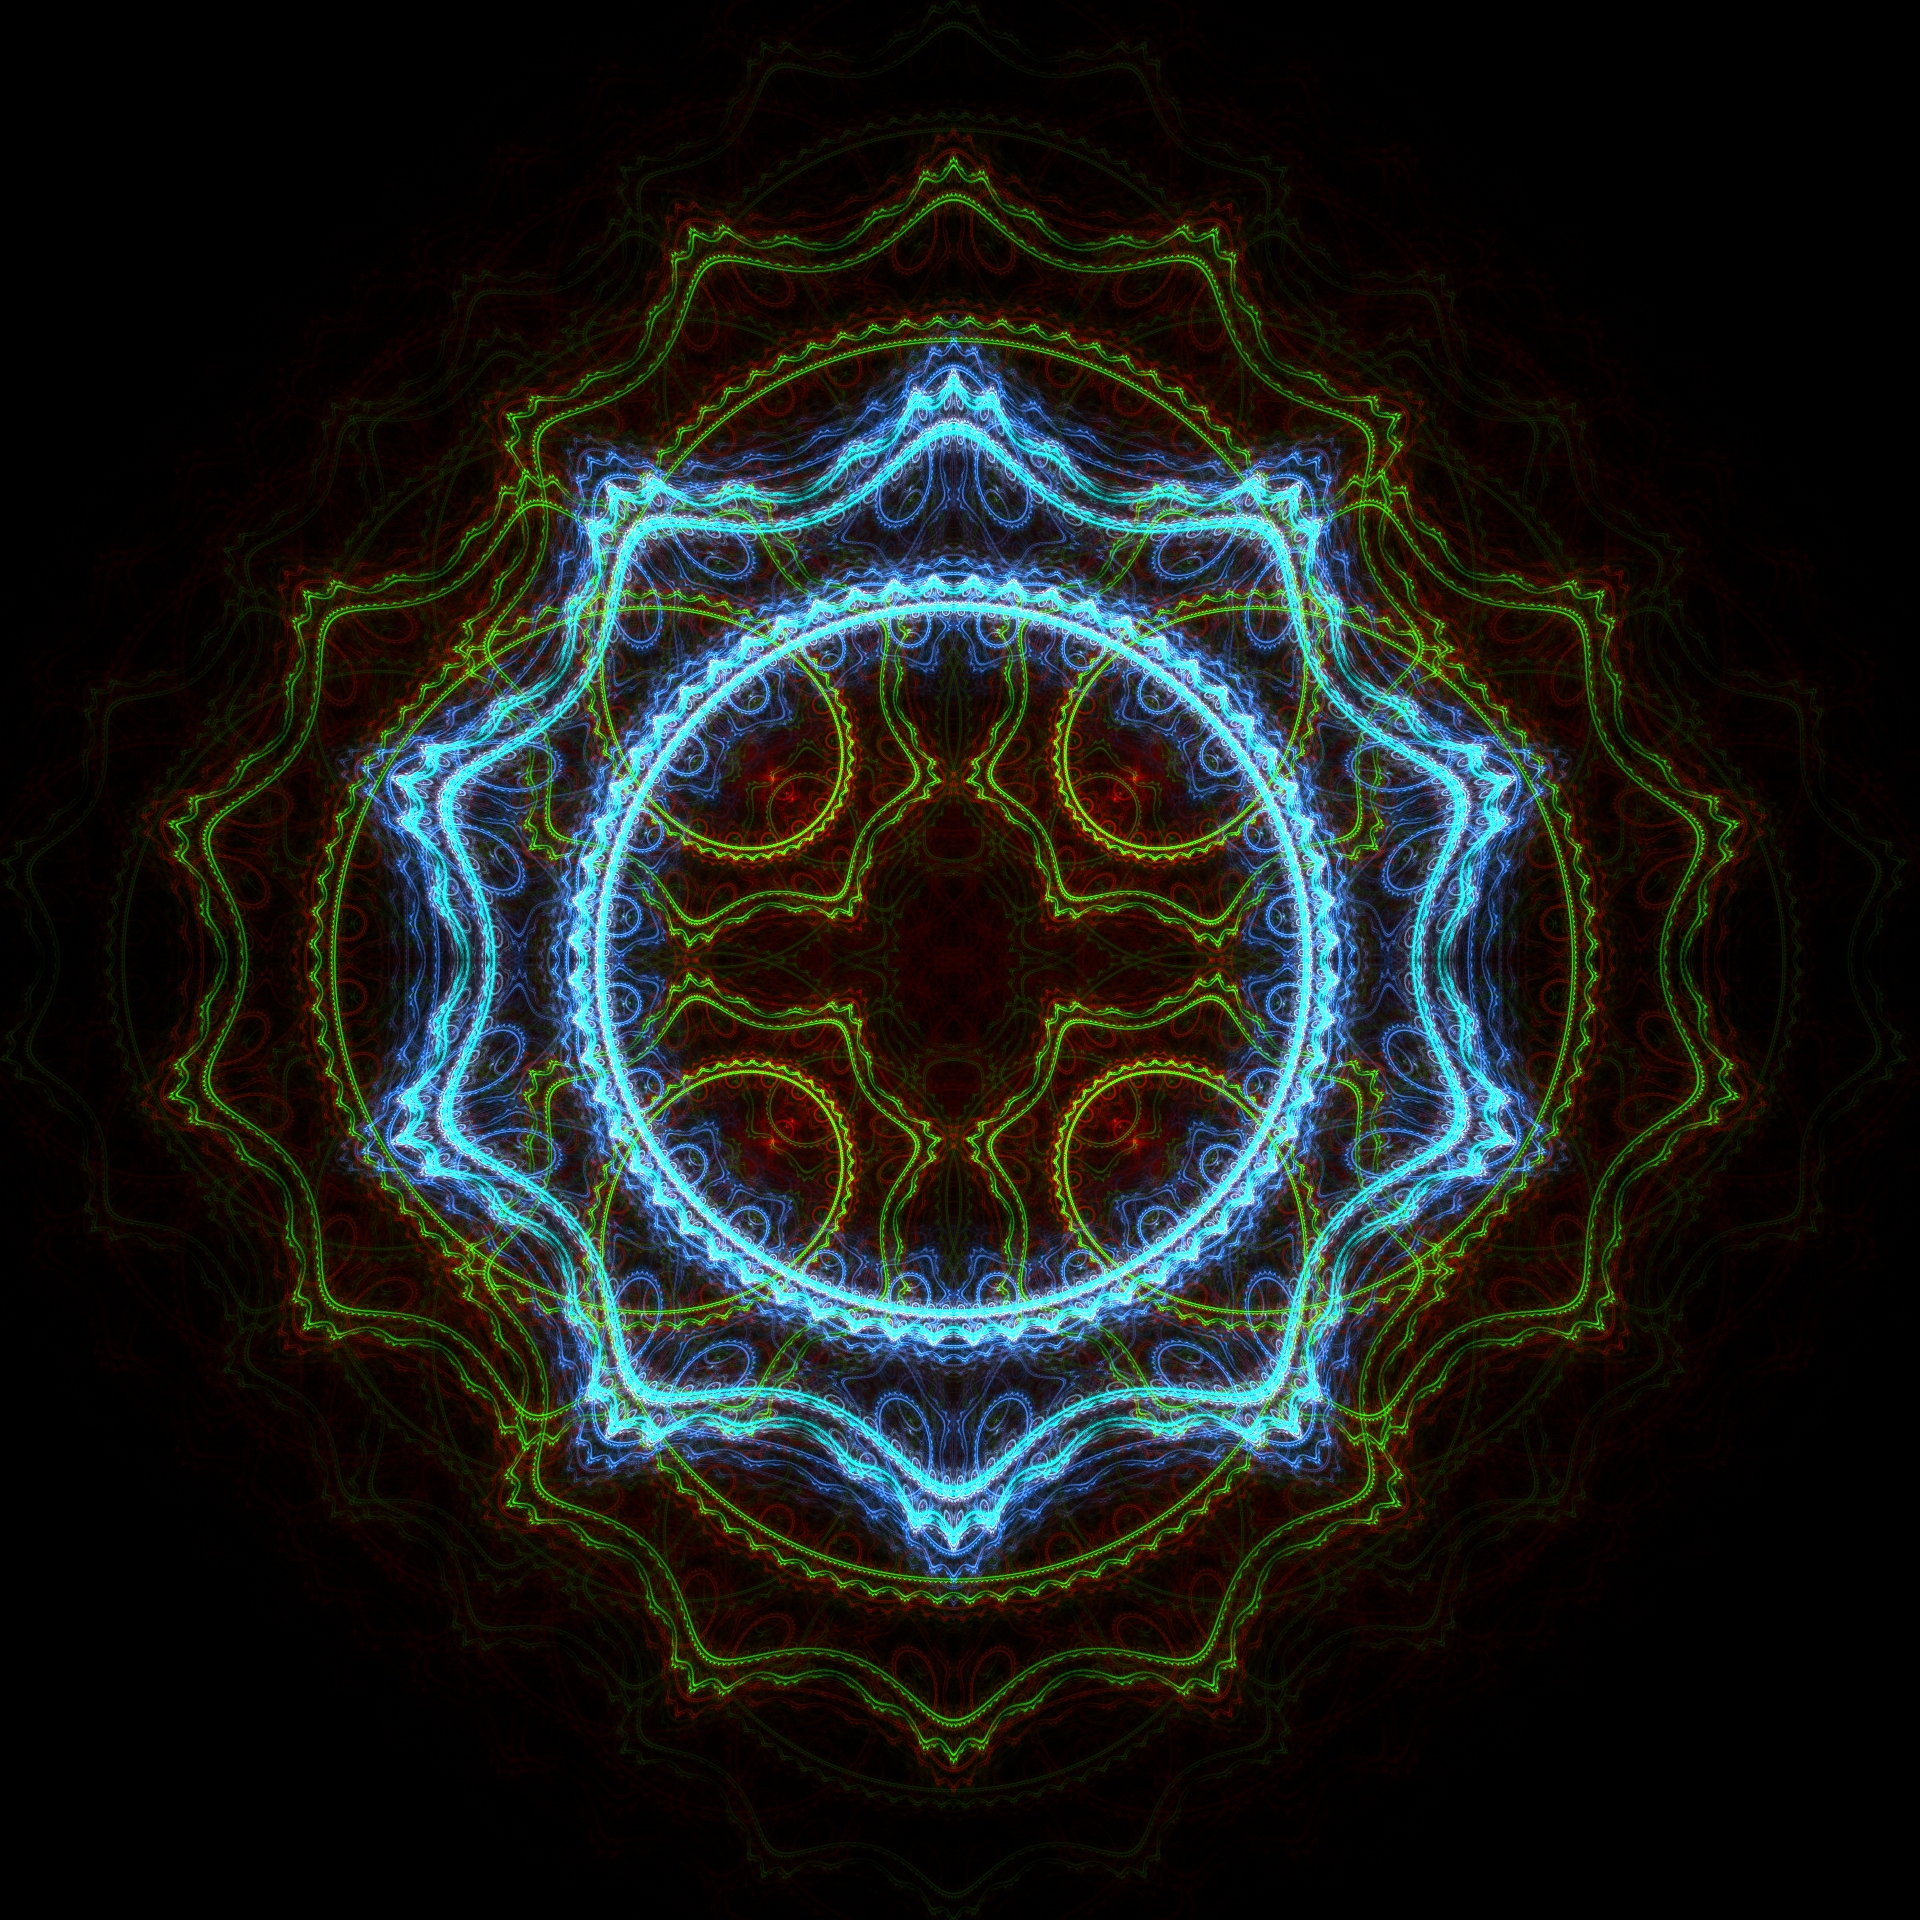 File:Julian fractal.jpg - Wikimedia Commons